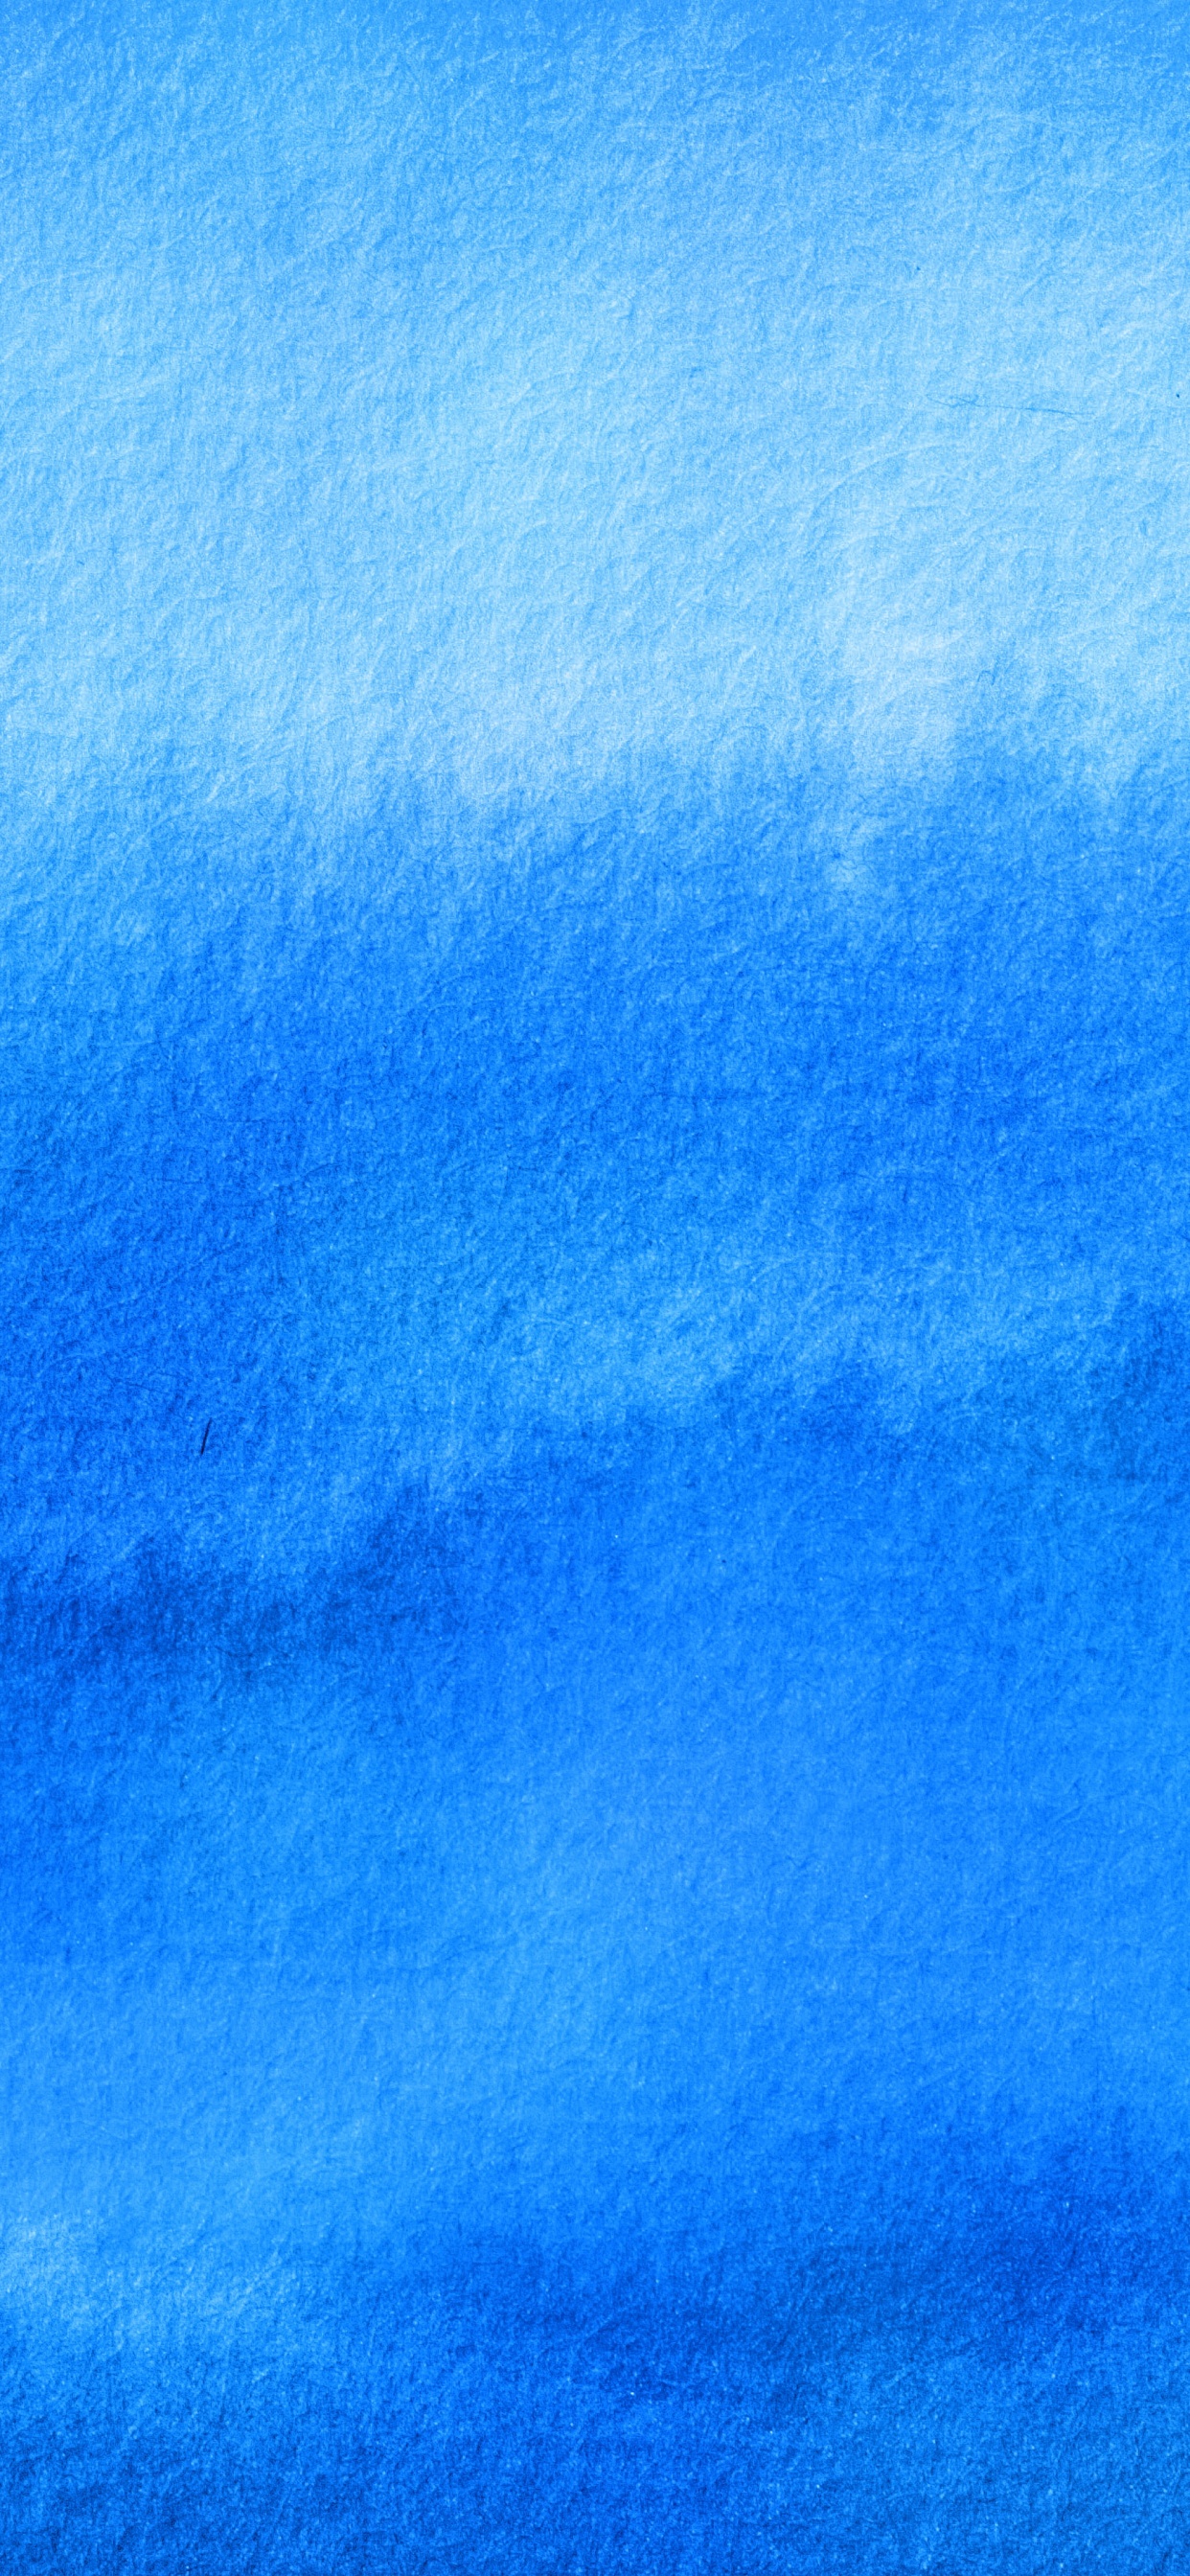 Nuages Bleus et Blancs Pendant la Journée. Wallpaper in 1242x2688 Resolution